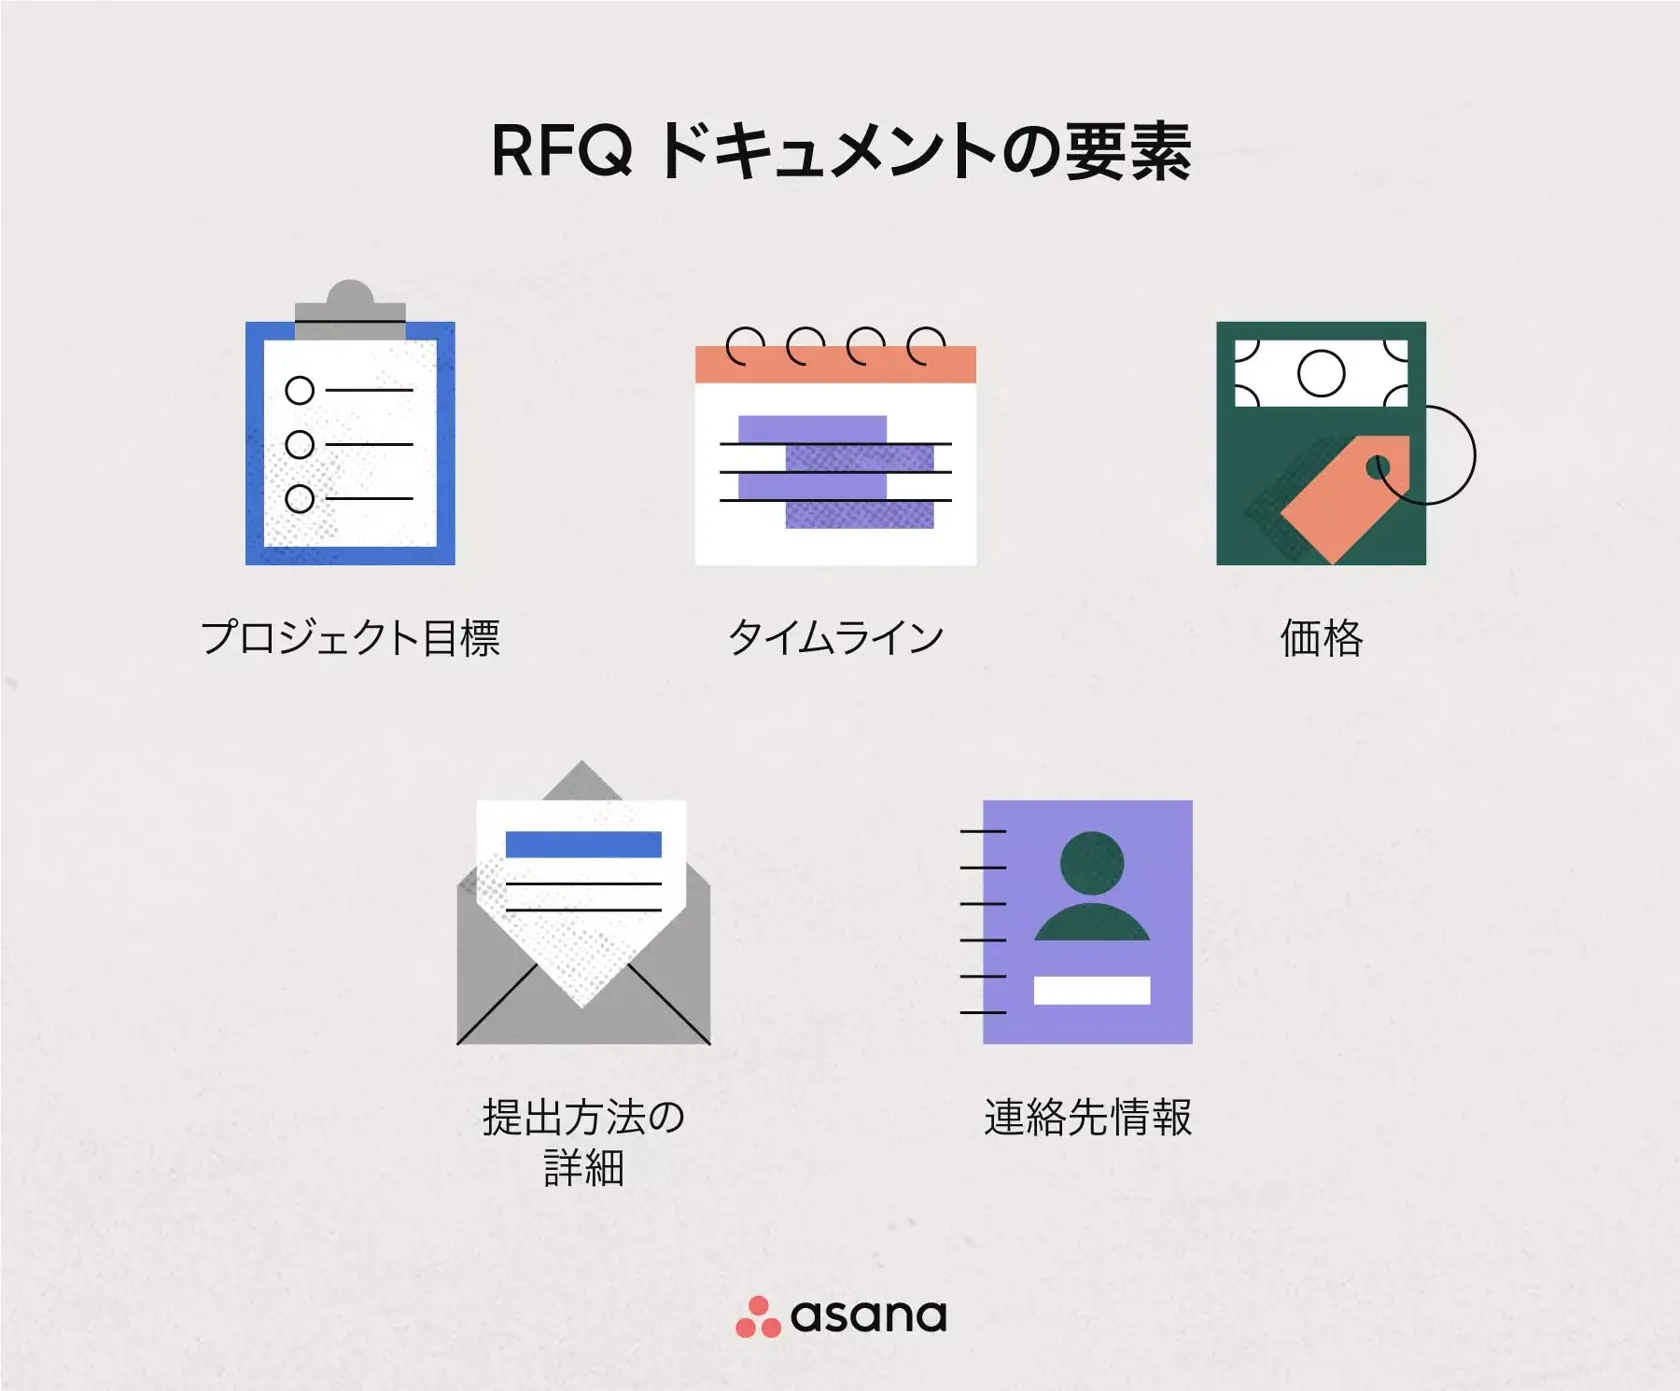 RFQ ドキュメントの要素